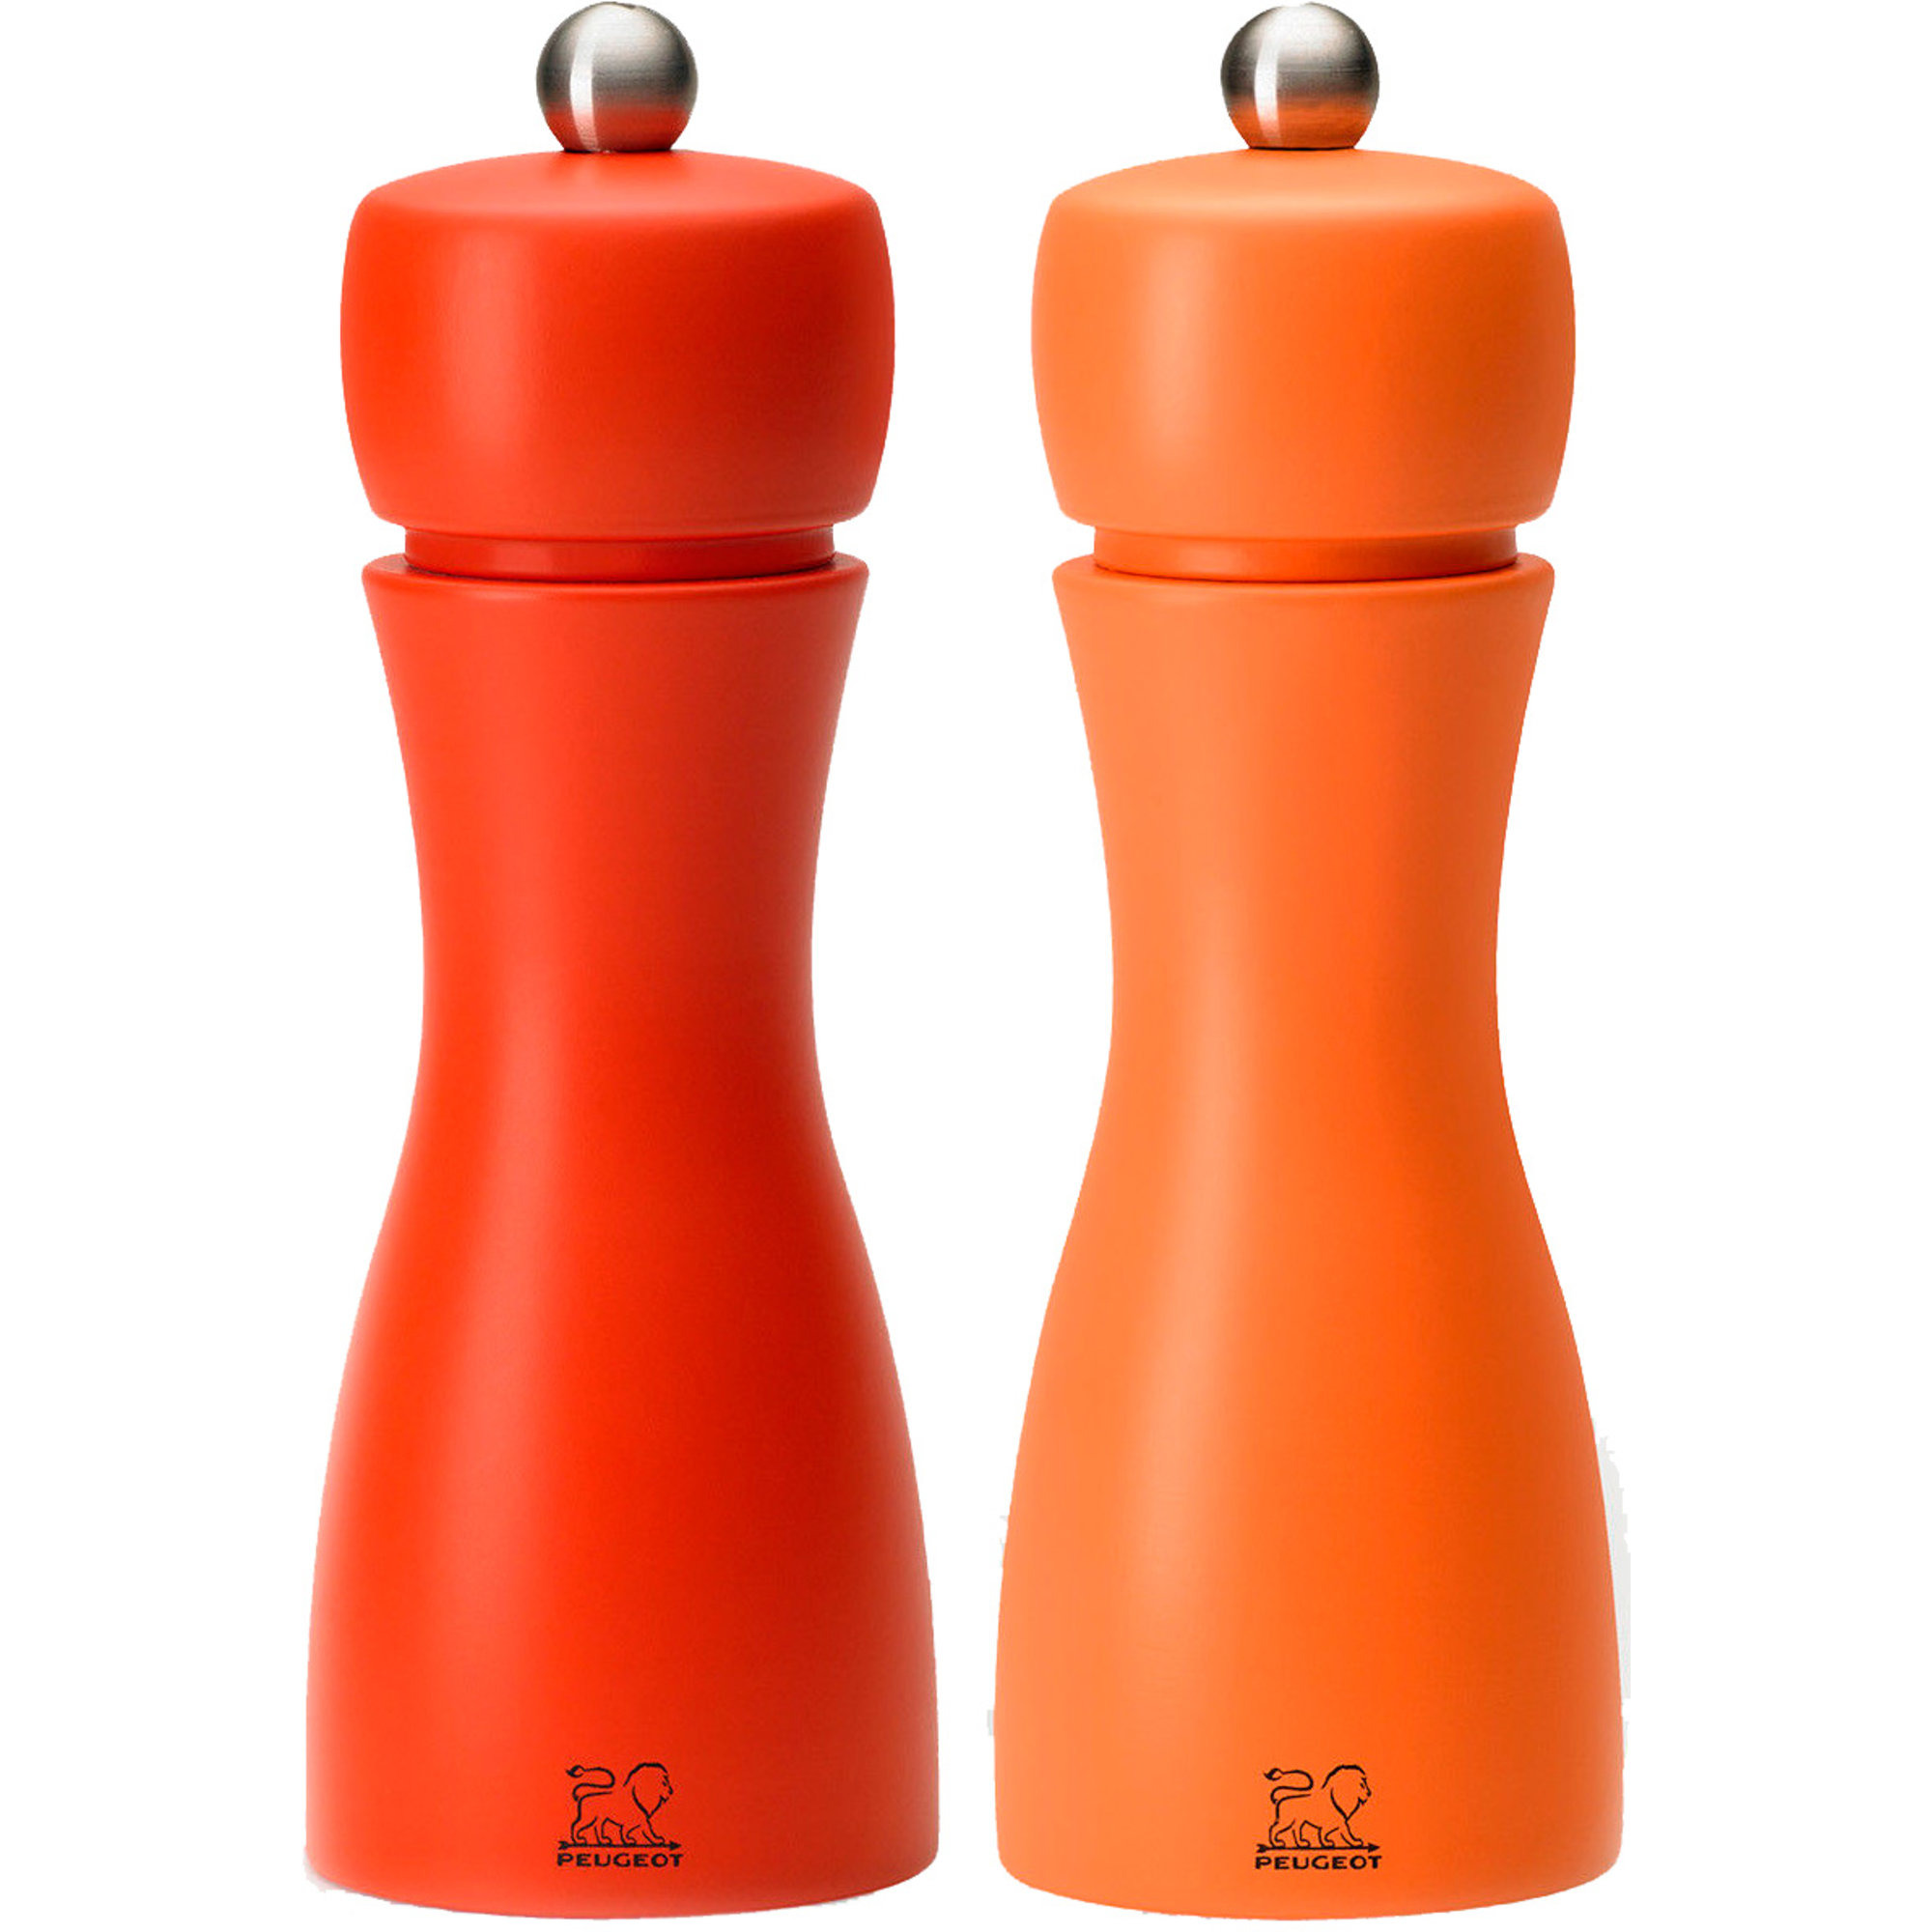 Peugeot Tahiti Duo salt & peberkværn 15 cm, rød/orange